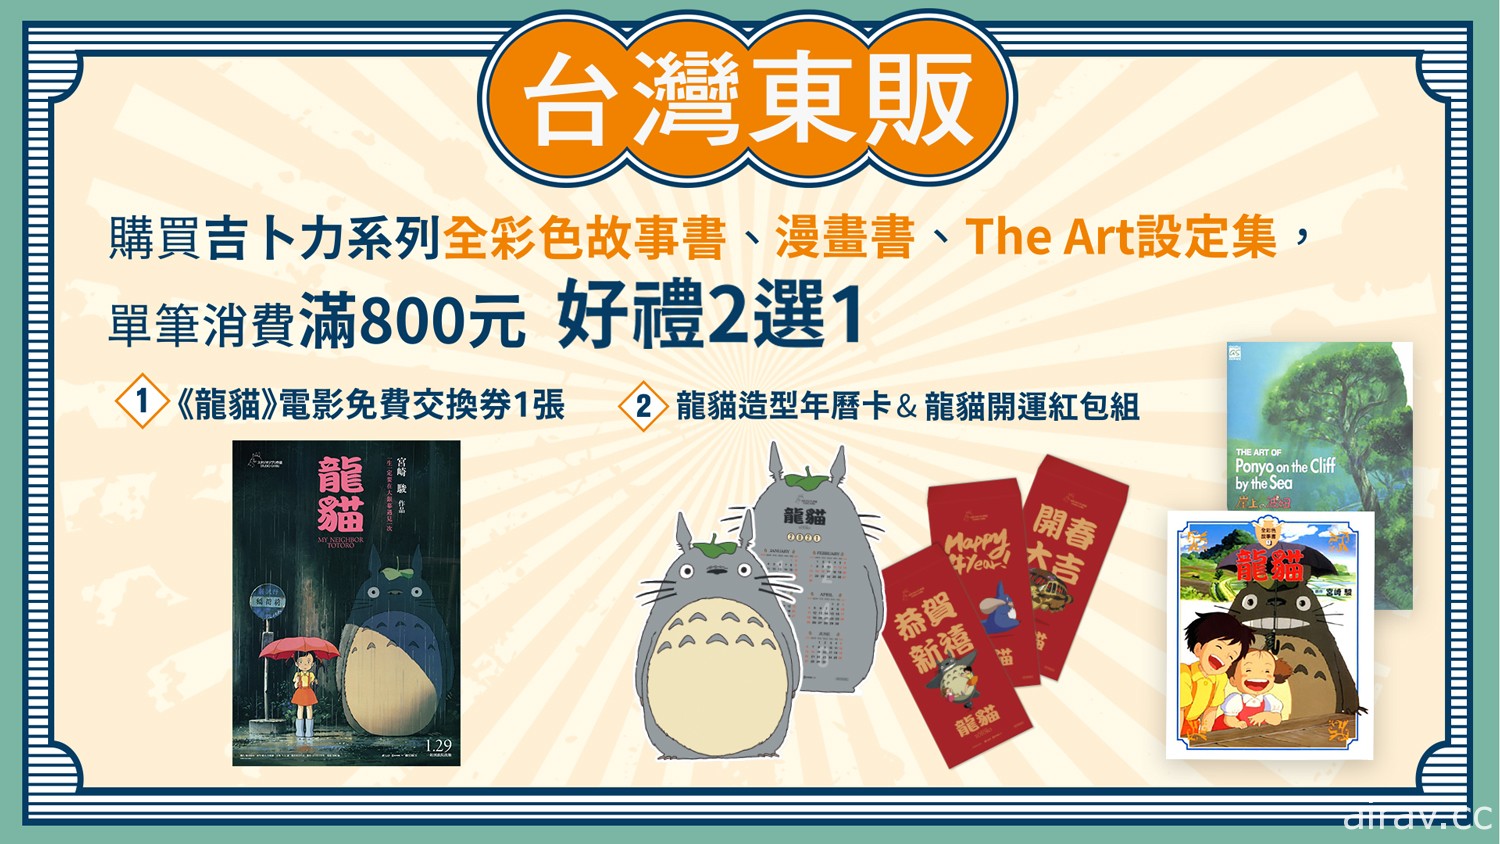 【TiCA21】台湾东贩公开动漫节活动及优惠资讯